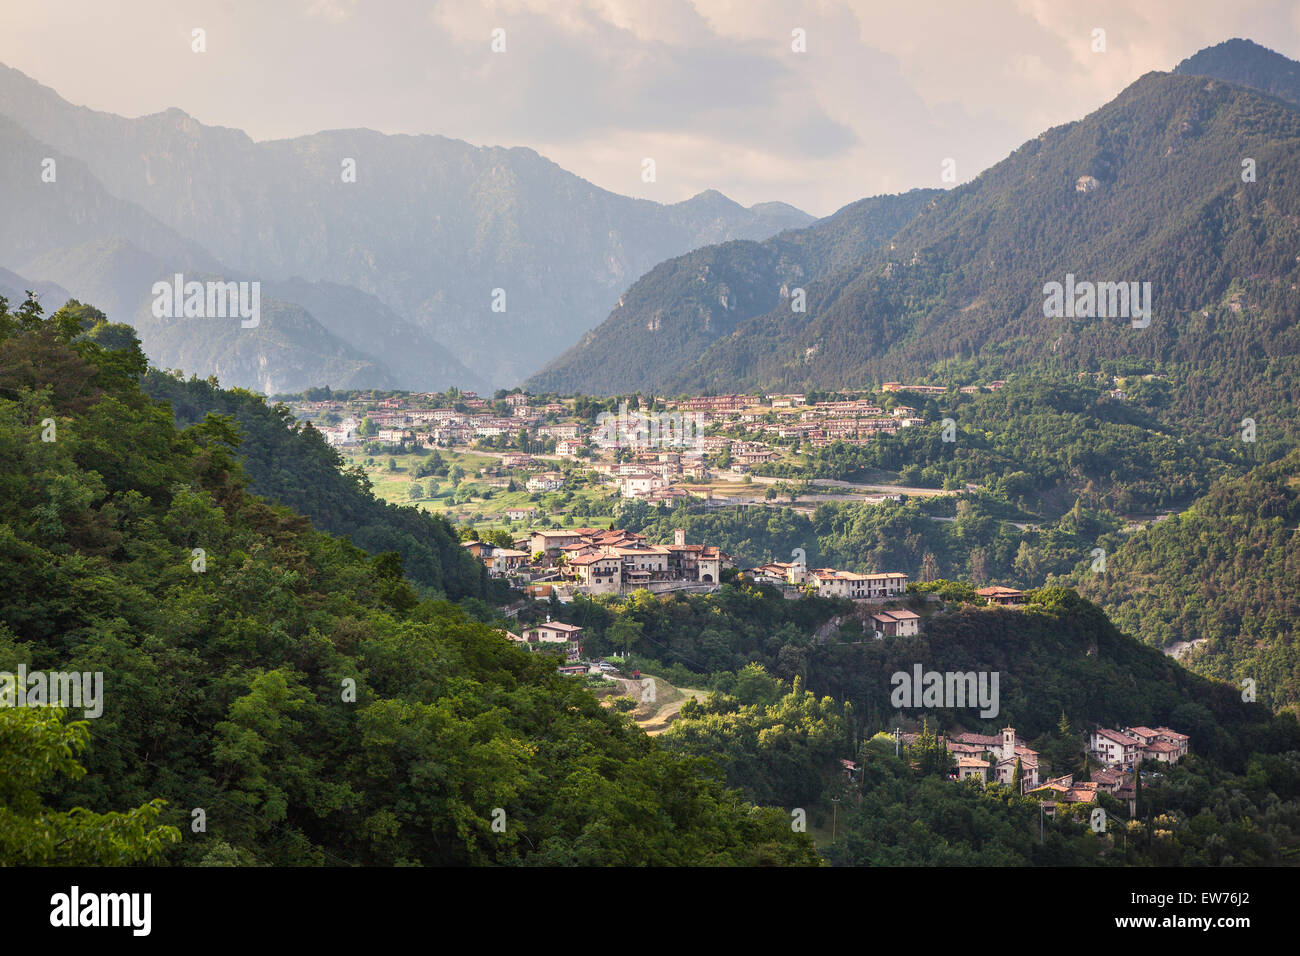 View of Vesio, Brescia, Italy Stock Photo